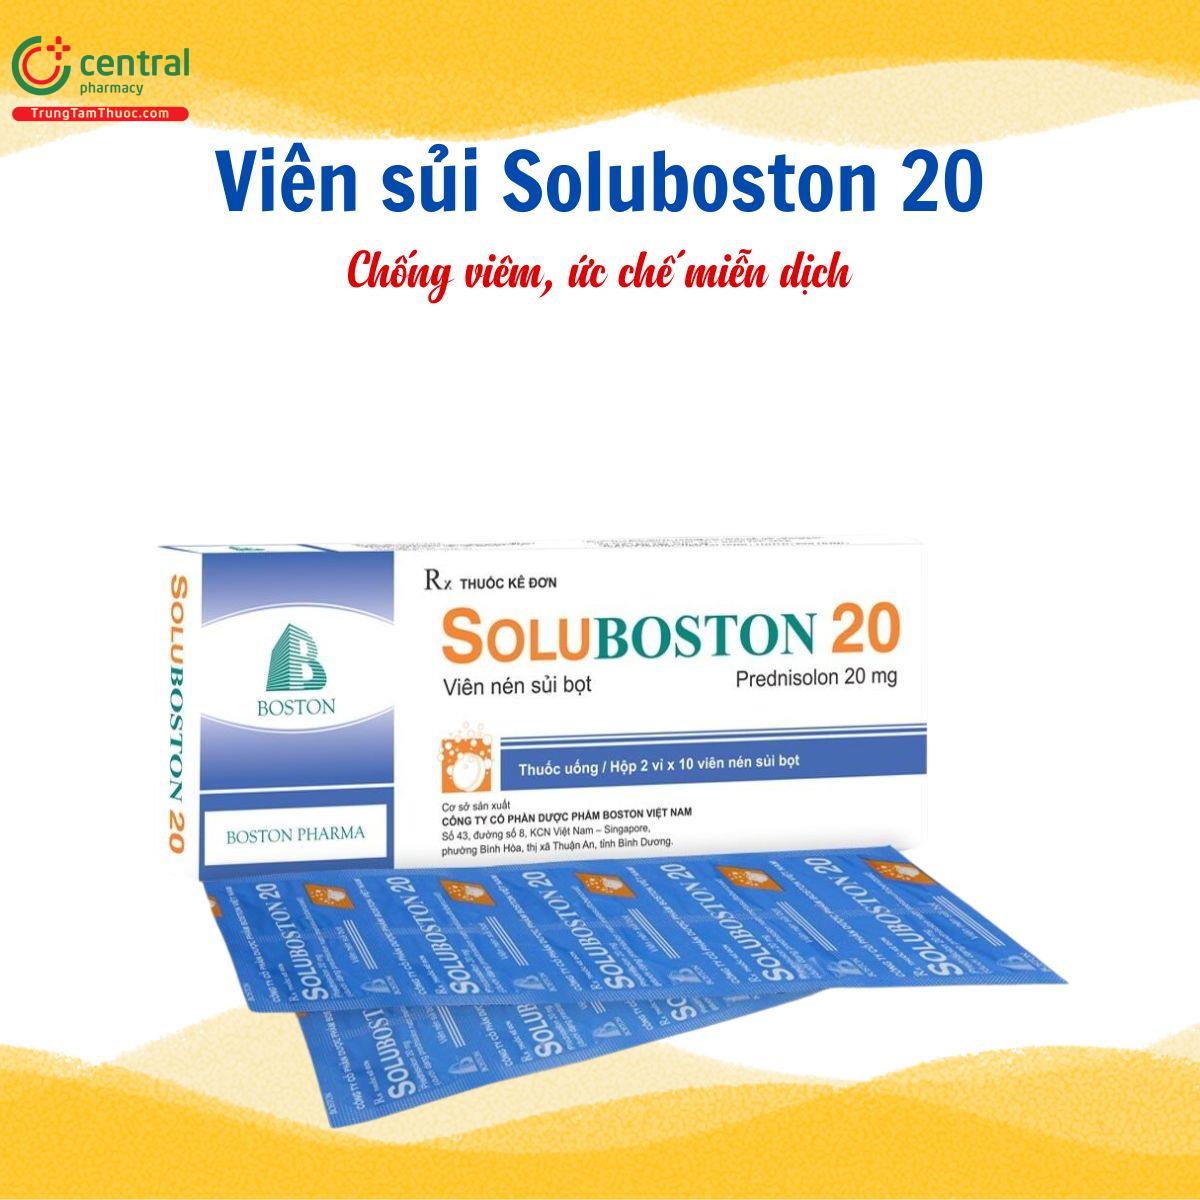 Thuốc Soluboston 20 viên sủi - Chống viêm, ức chế miễn dịch